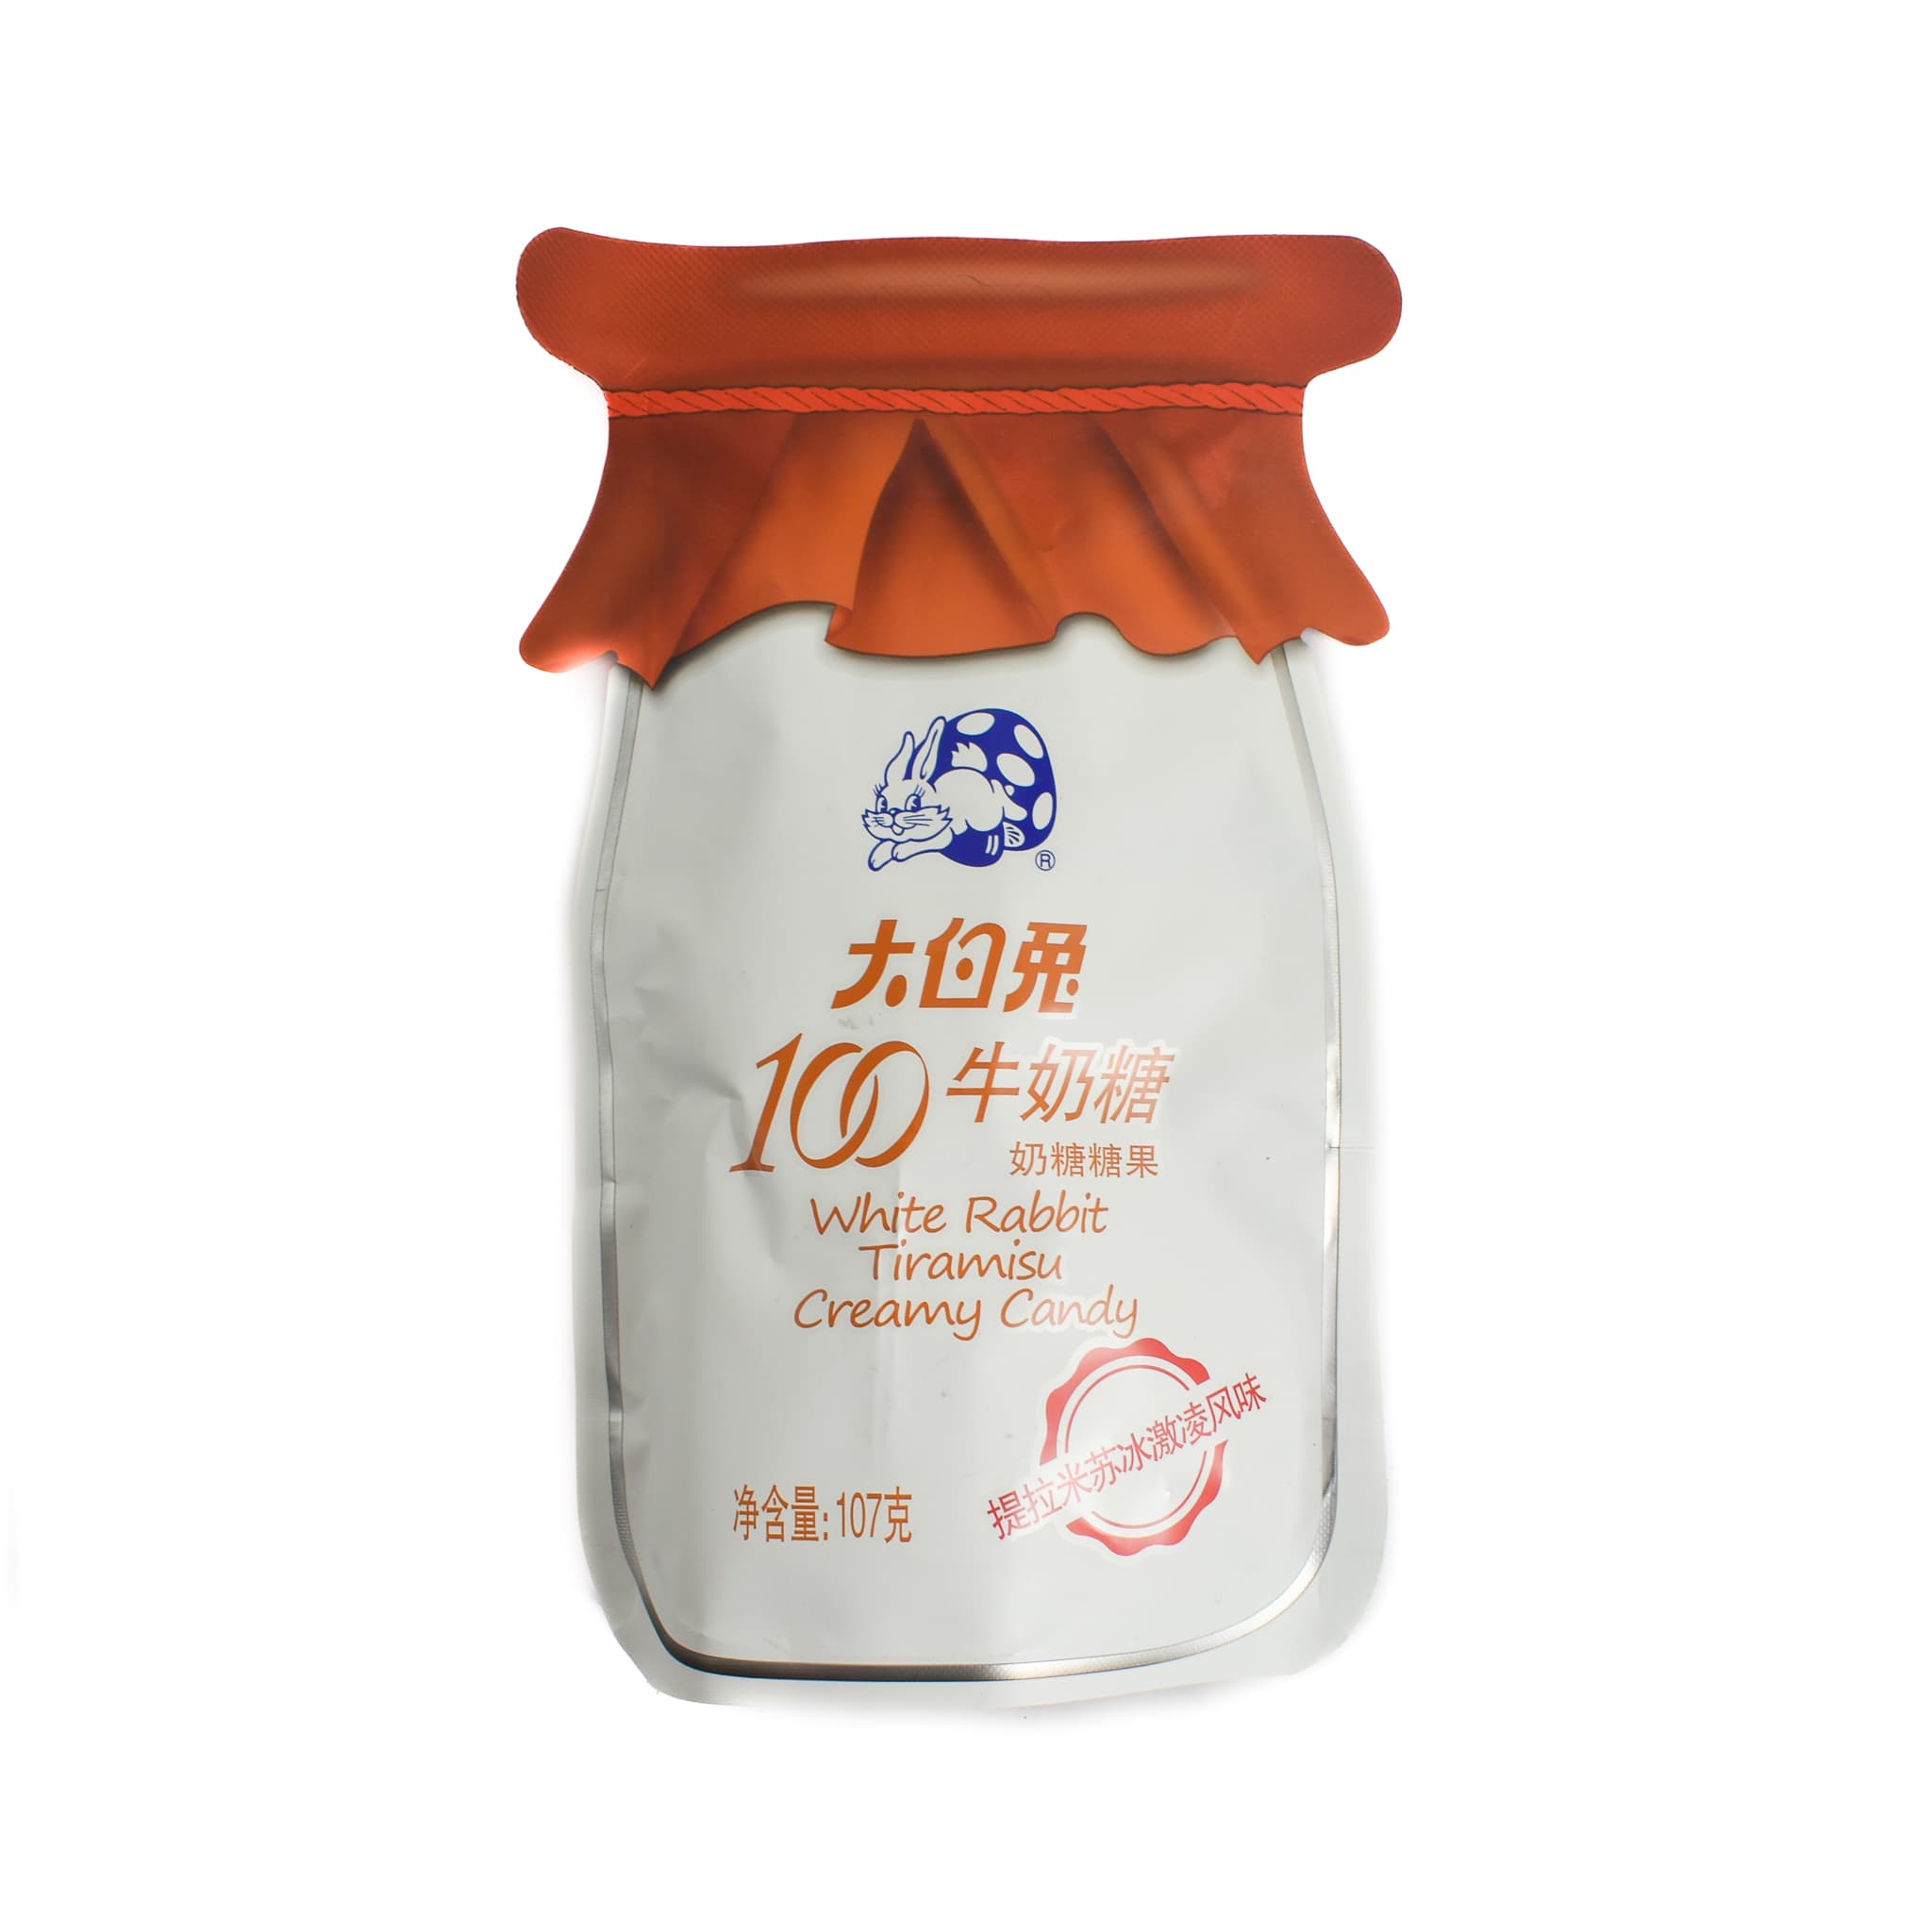 White Rabbit Tiramisu Creamy Candy, 107g